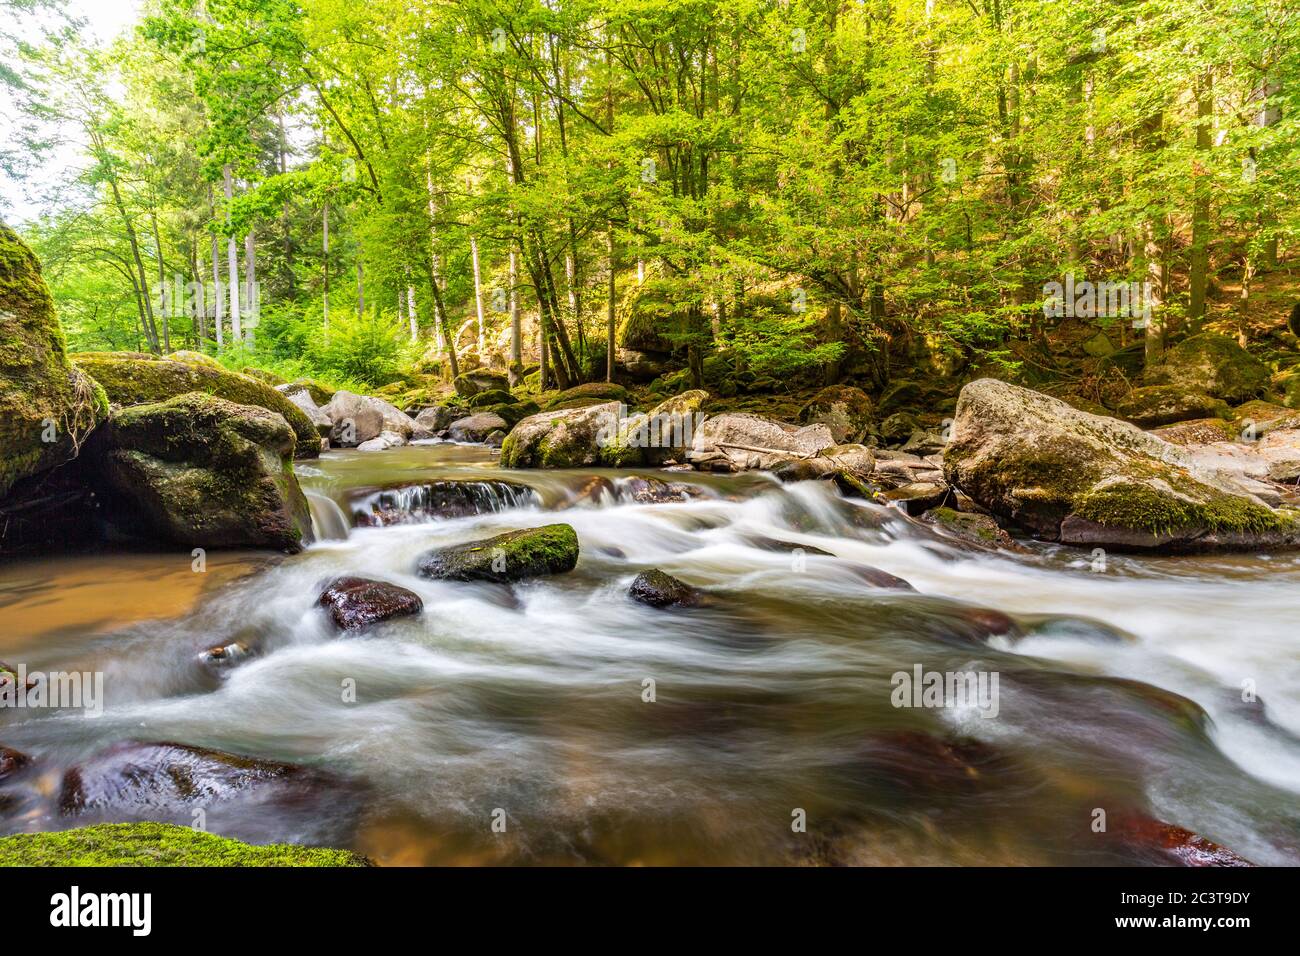 Nature forestière incroyable, rivière avec rochers dans la merveilleuse lumière du soleil de printemps d'été. La nature est magnifique petite cascade dans une forêt verte paysage luxuriant Banque D'Images